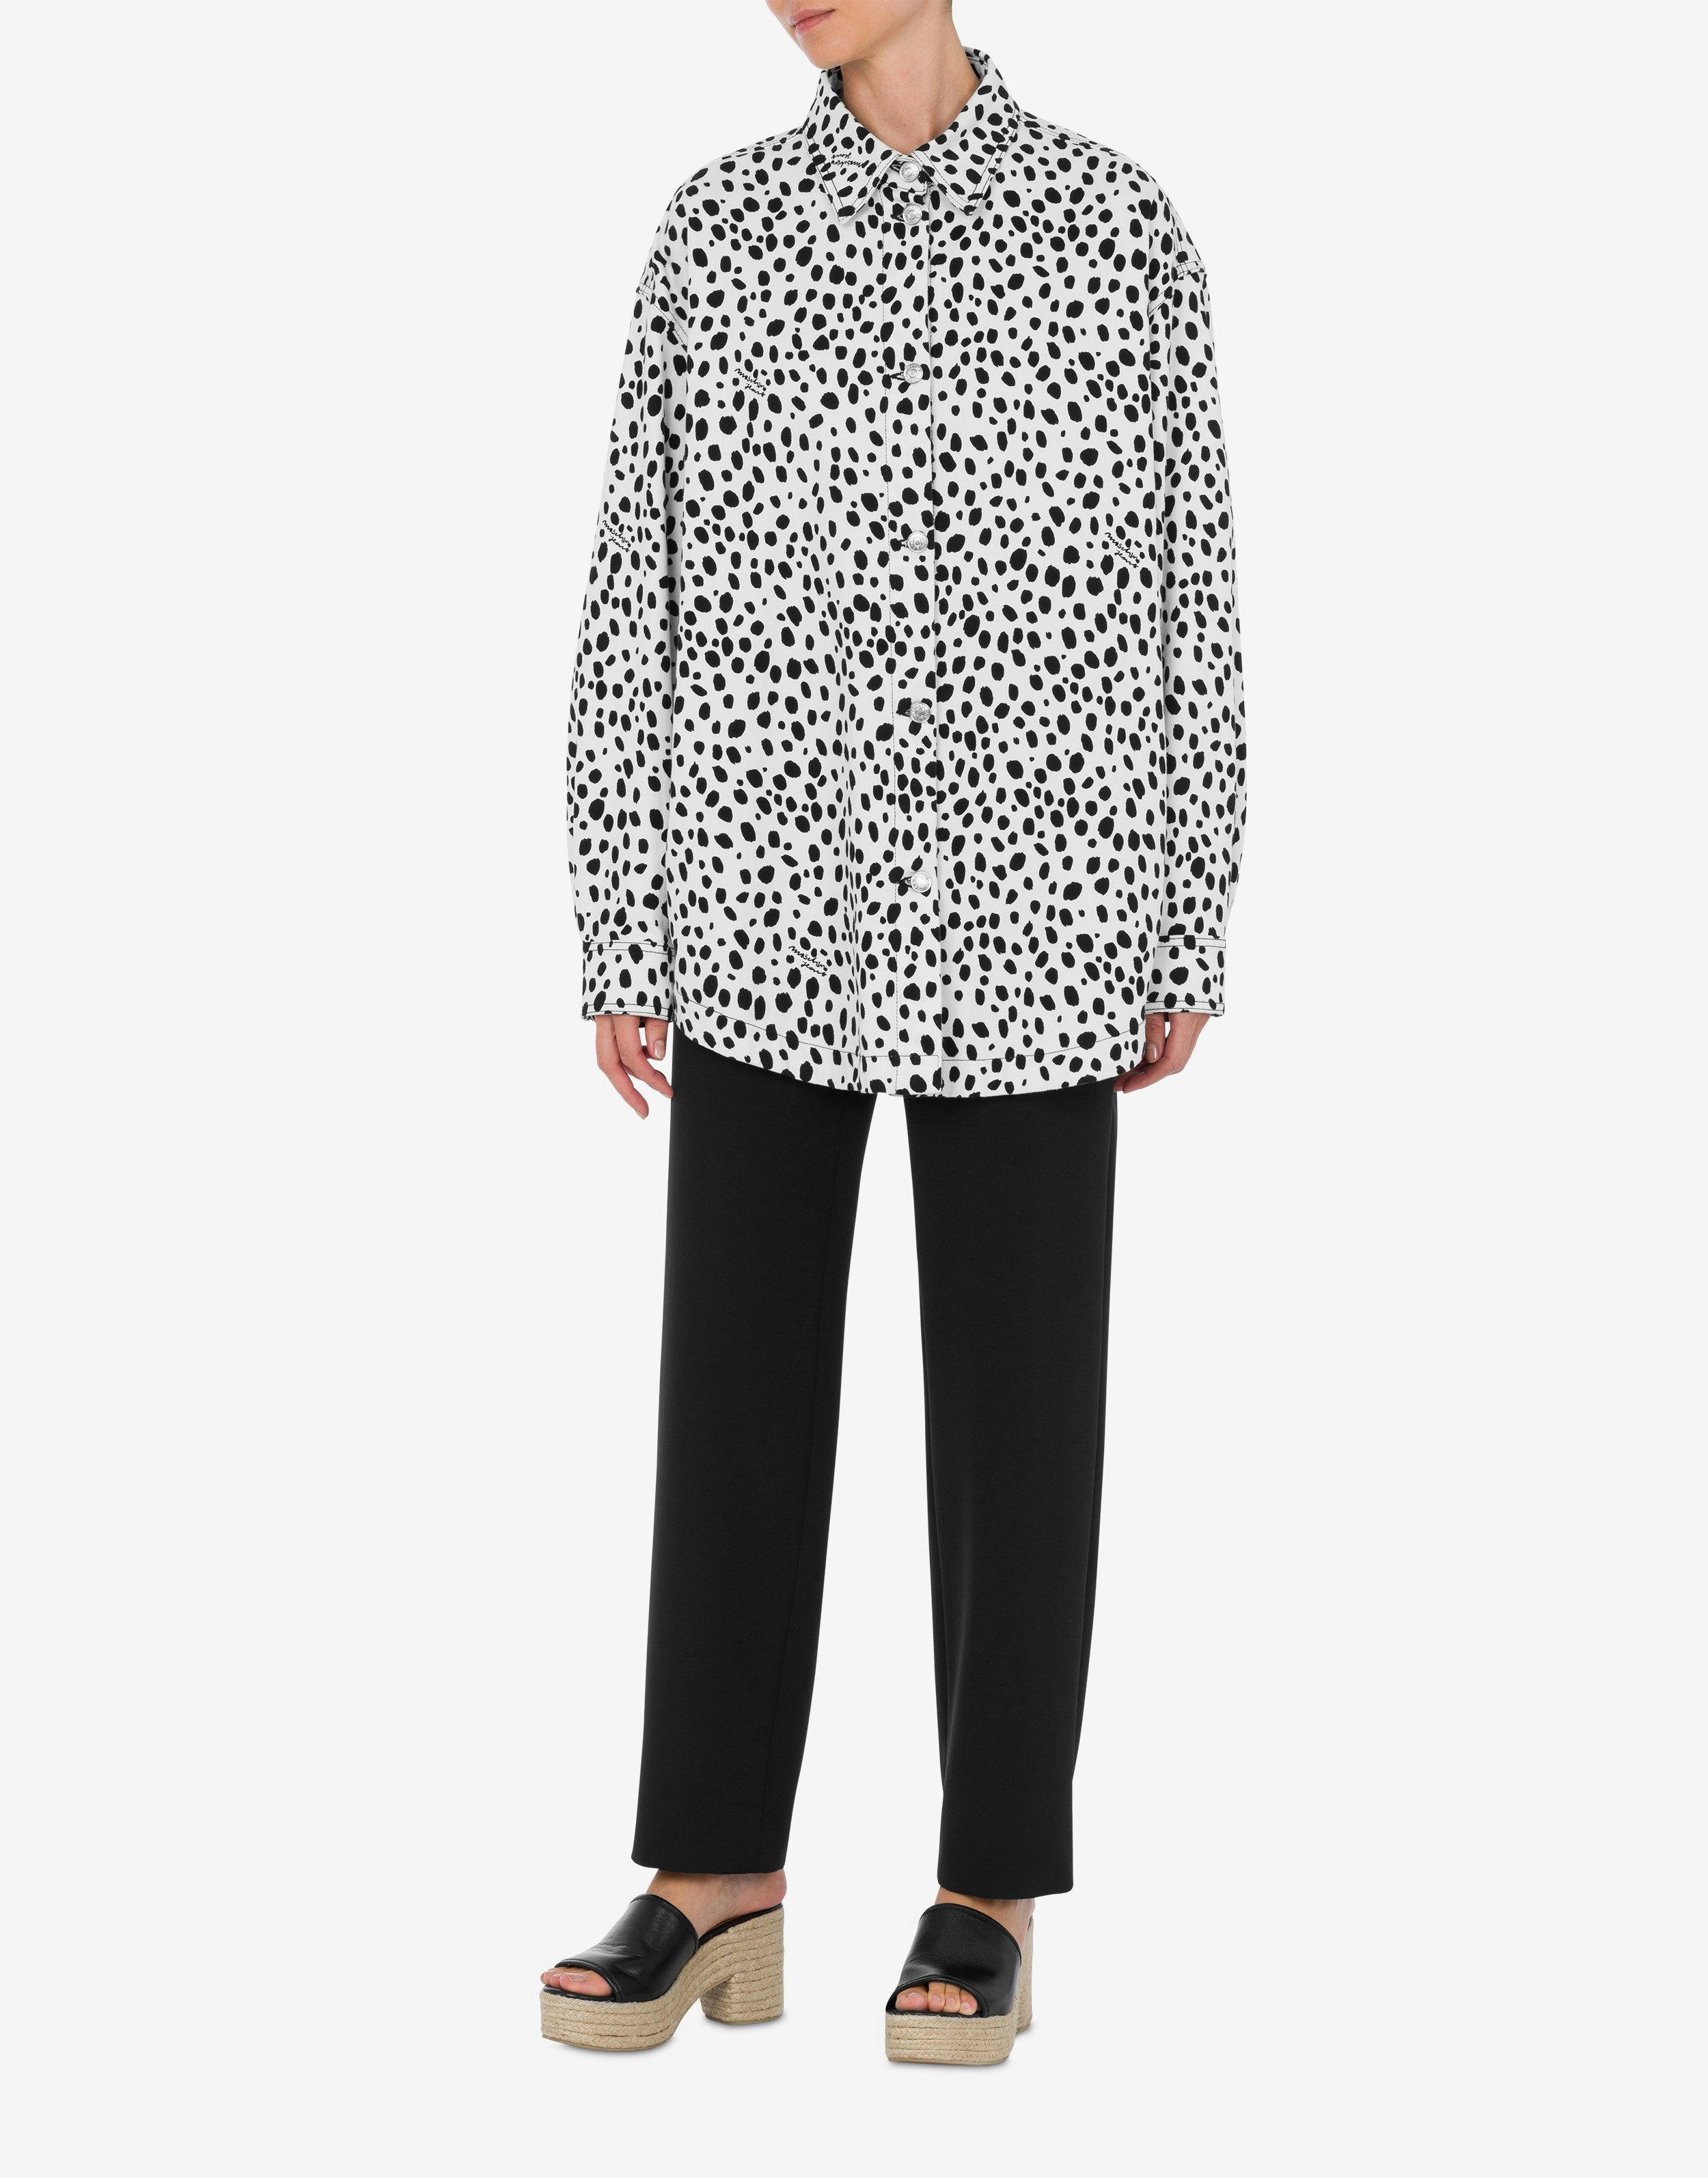 Shirt-Jacket Leopard Print